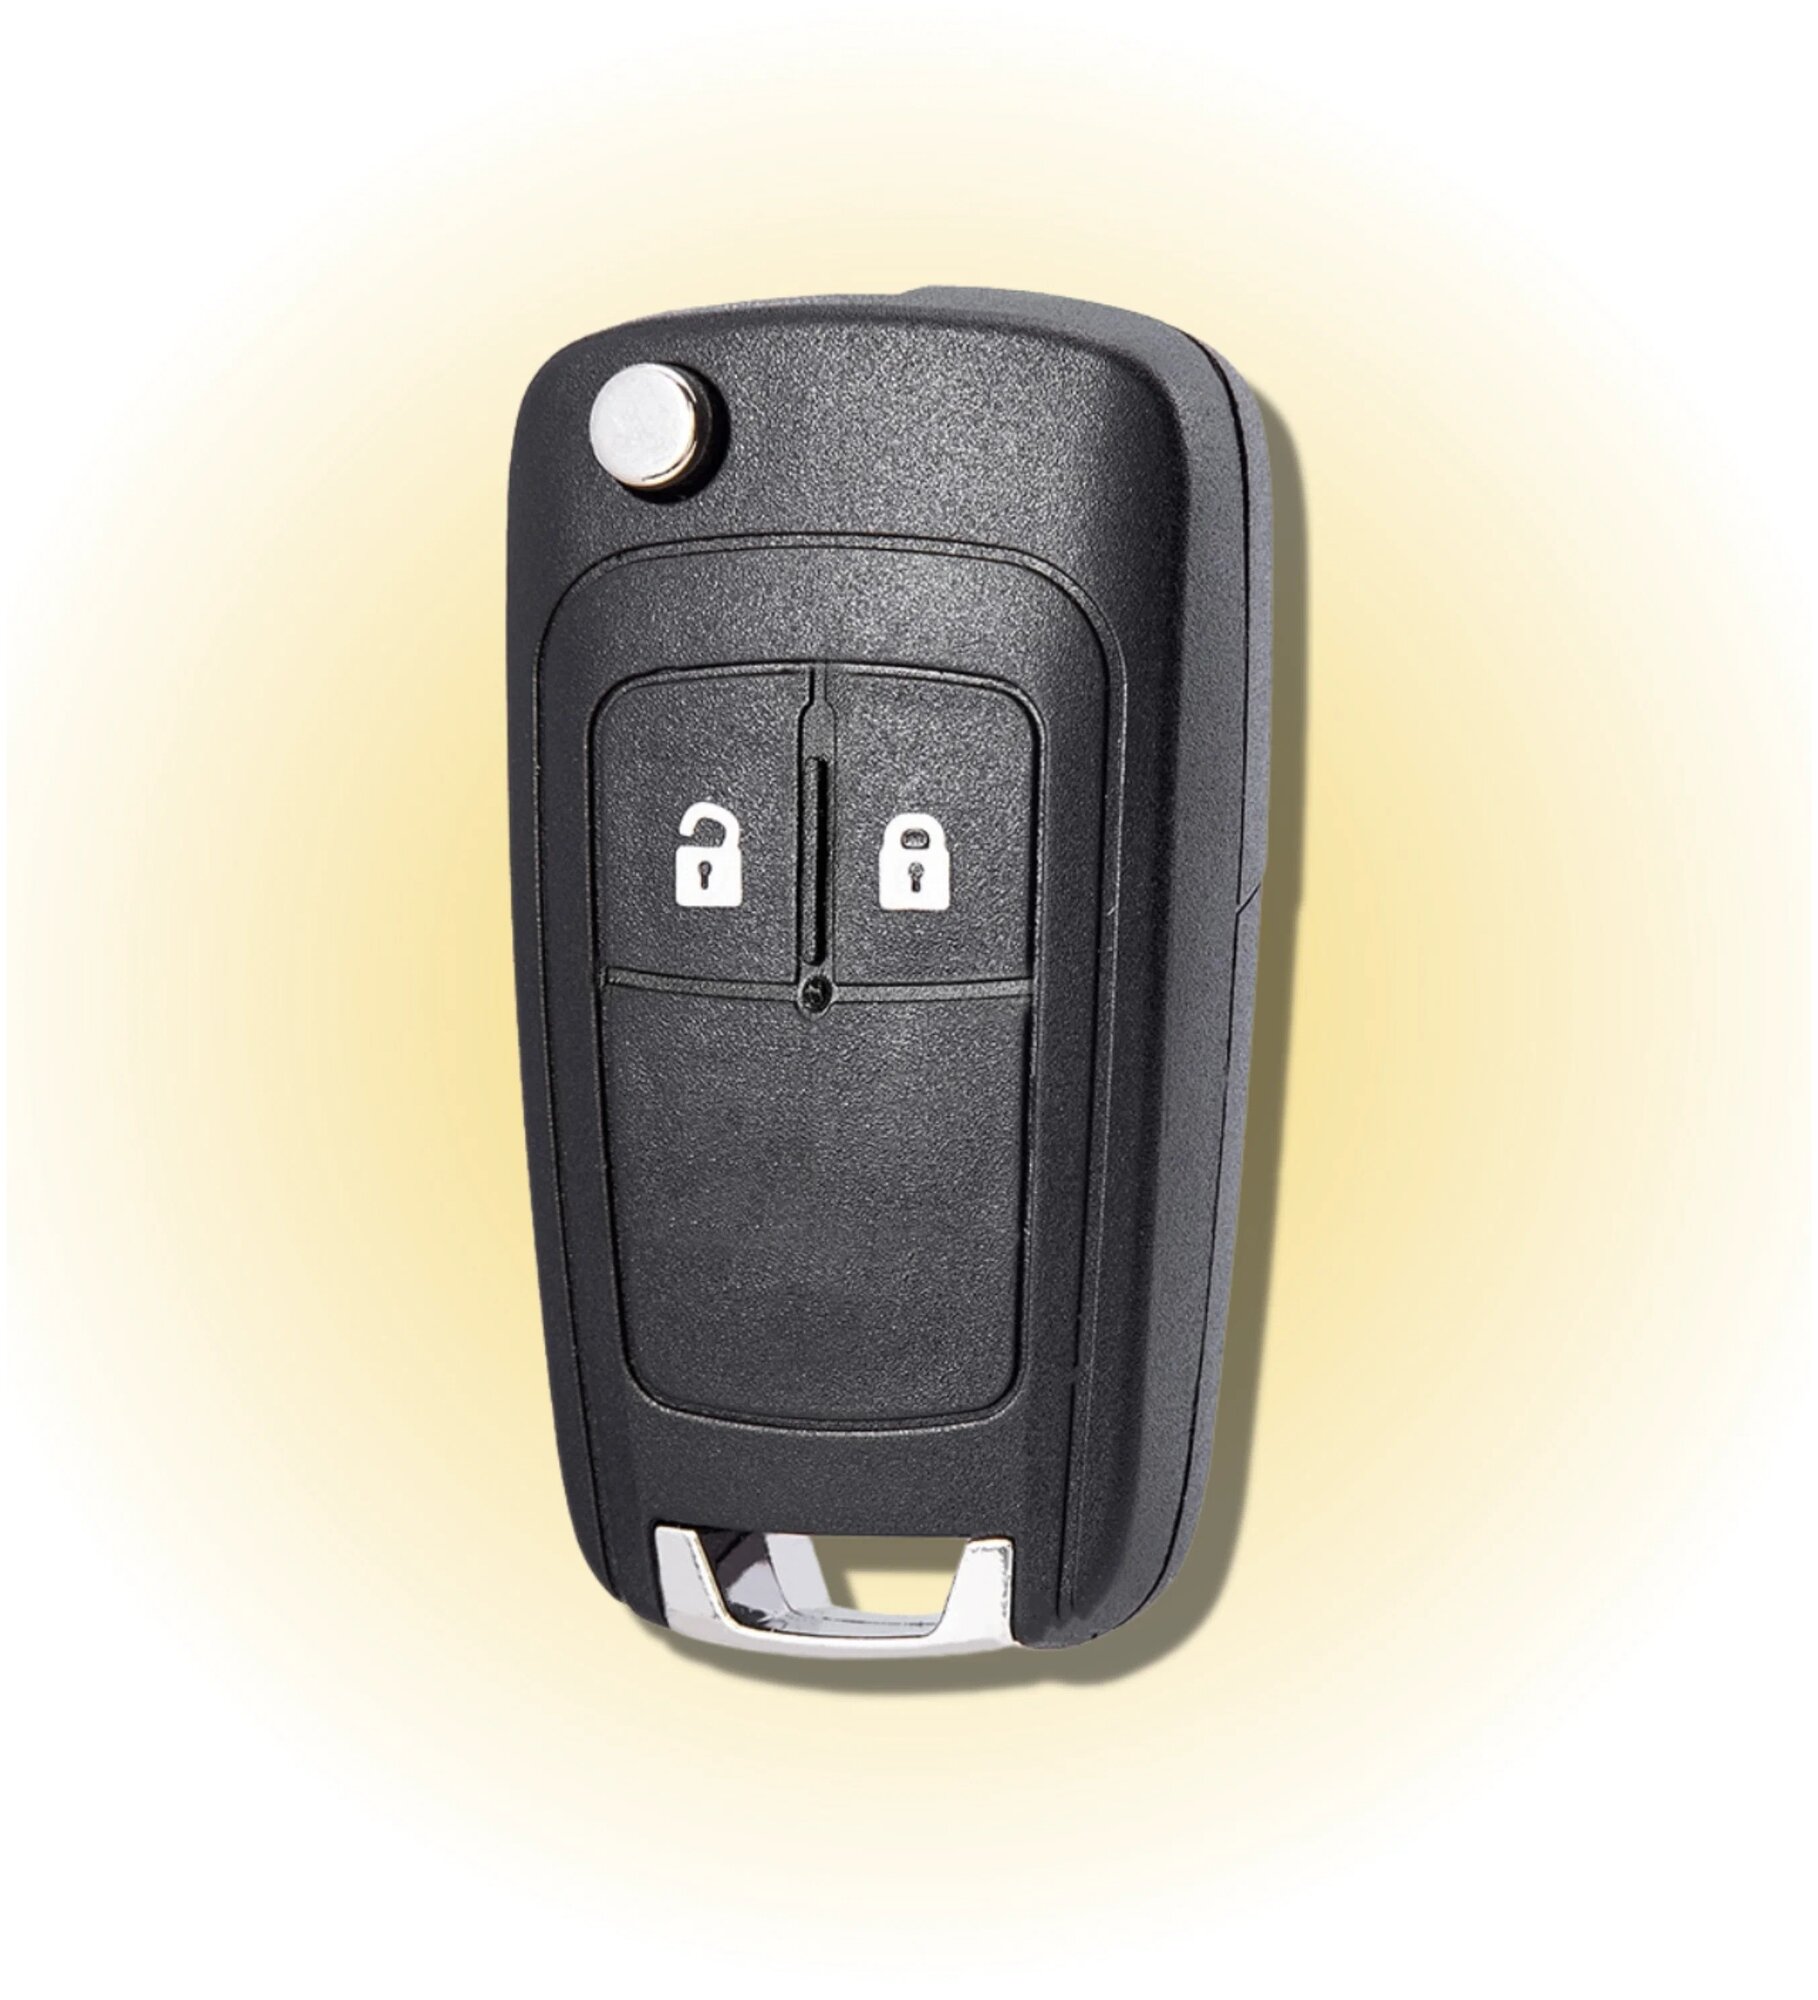 Корпус для ключа зажигания Опель, корпус для ключа Opel, 2 кнопки